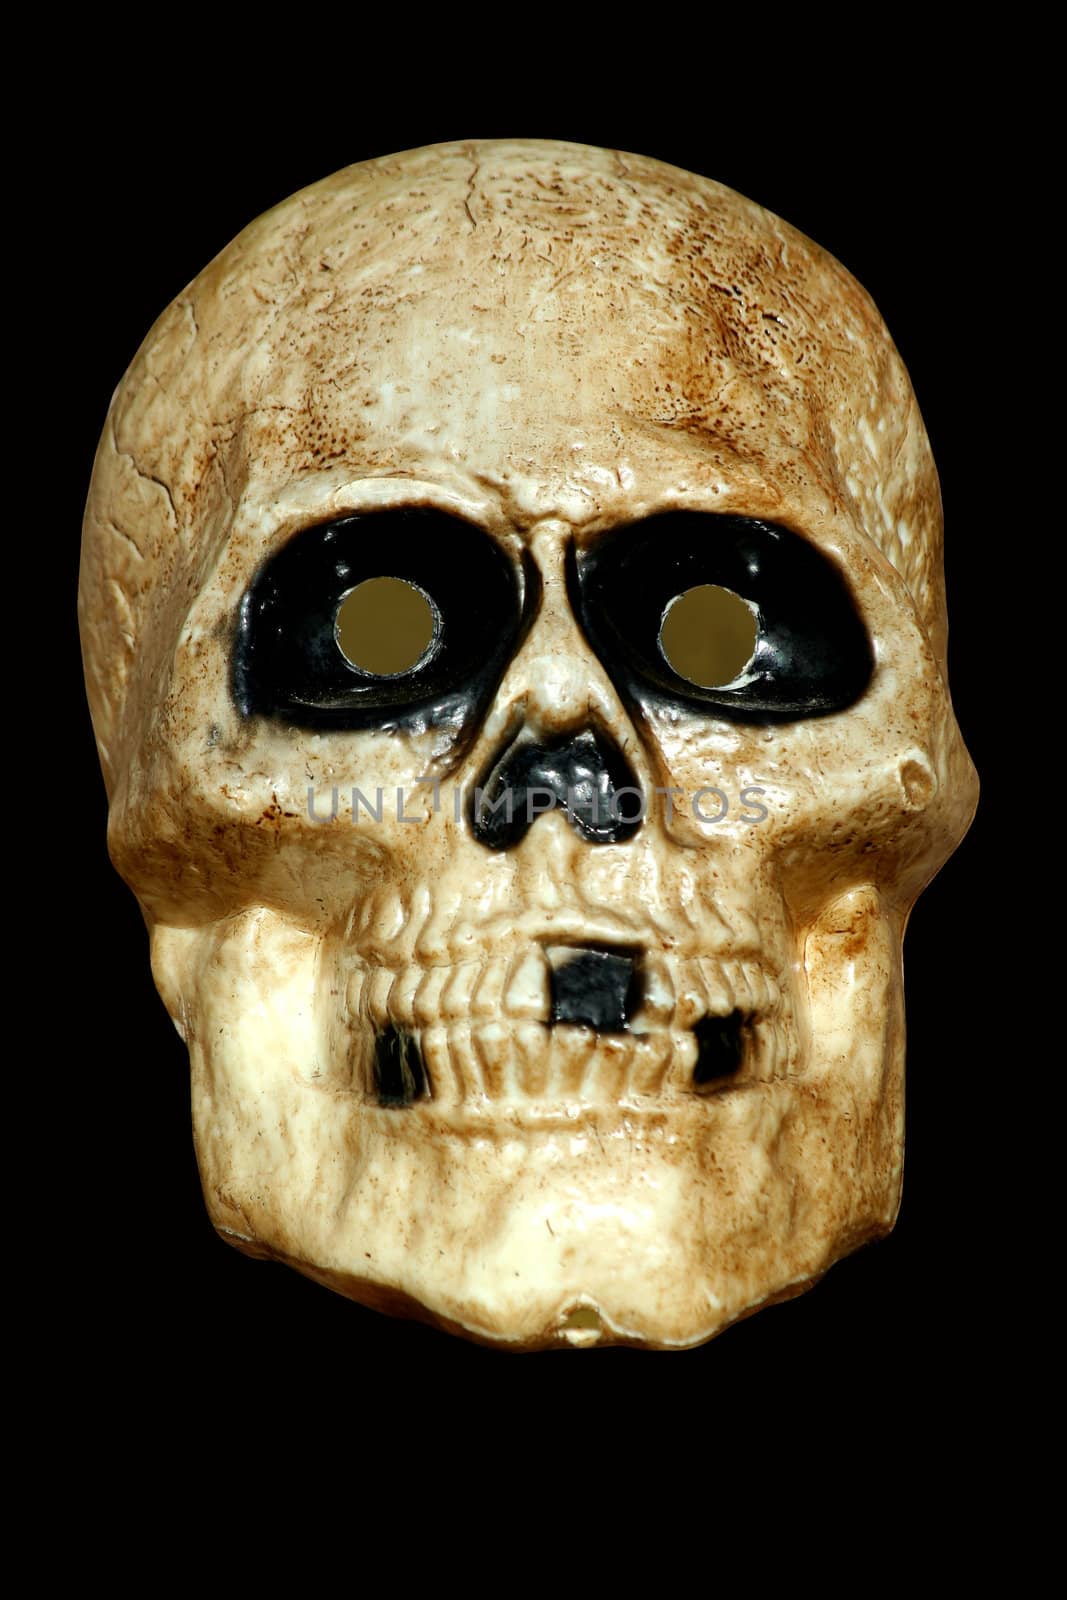 Scary skull on black by njnightsky